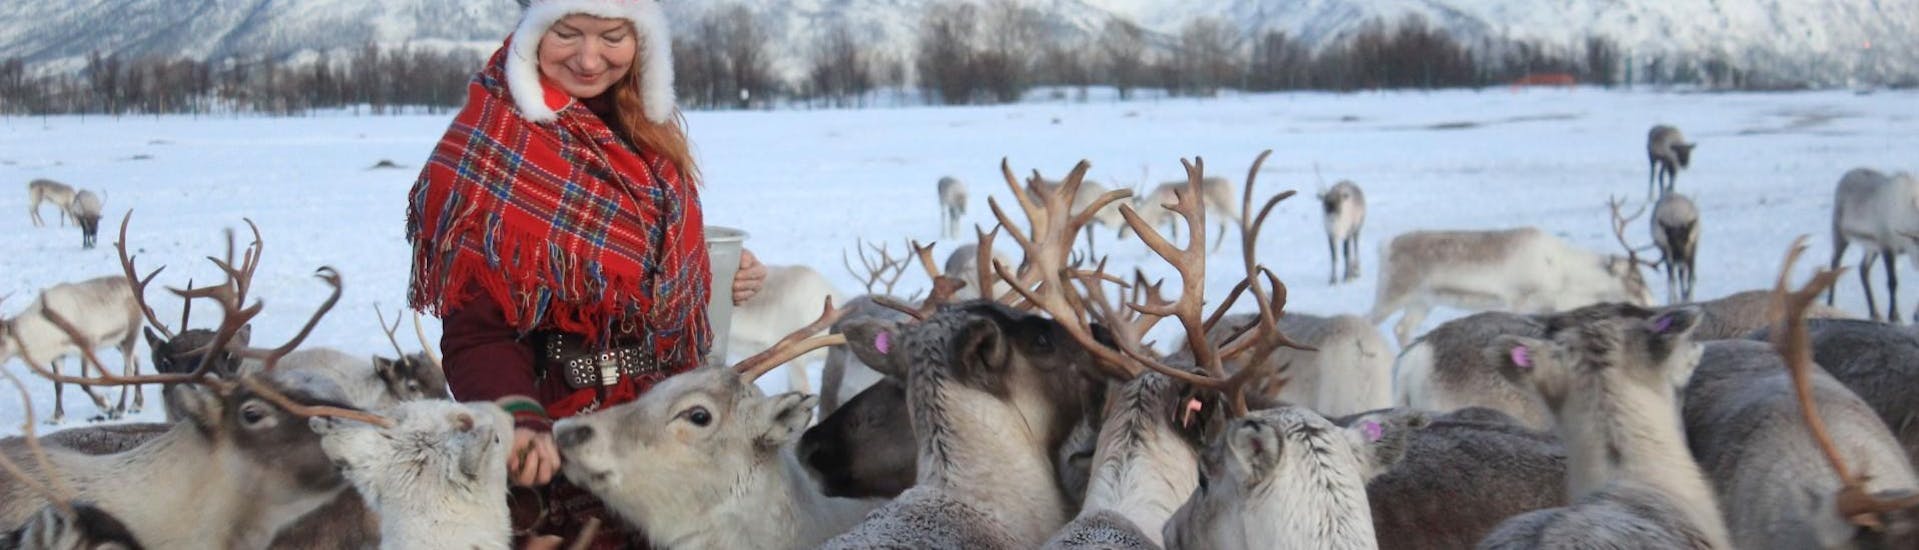 A Sami woman in traditional cloths is feeding reindeers during the Reindeer Experience & Feeding at Sami Camp in Tromsø organised by Tromso Arctic Reindeer-